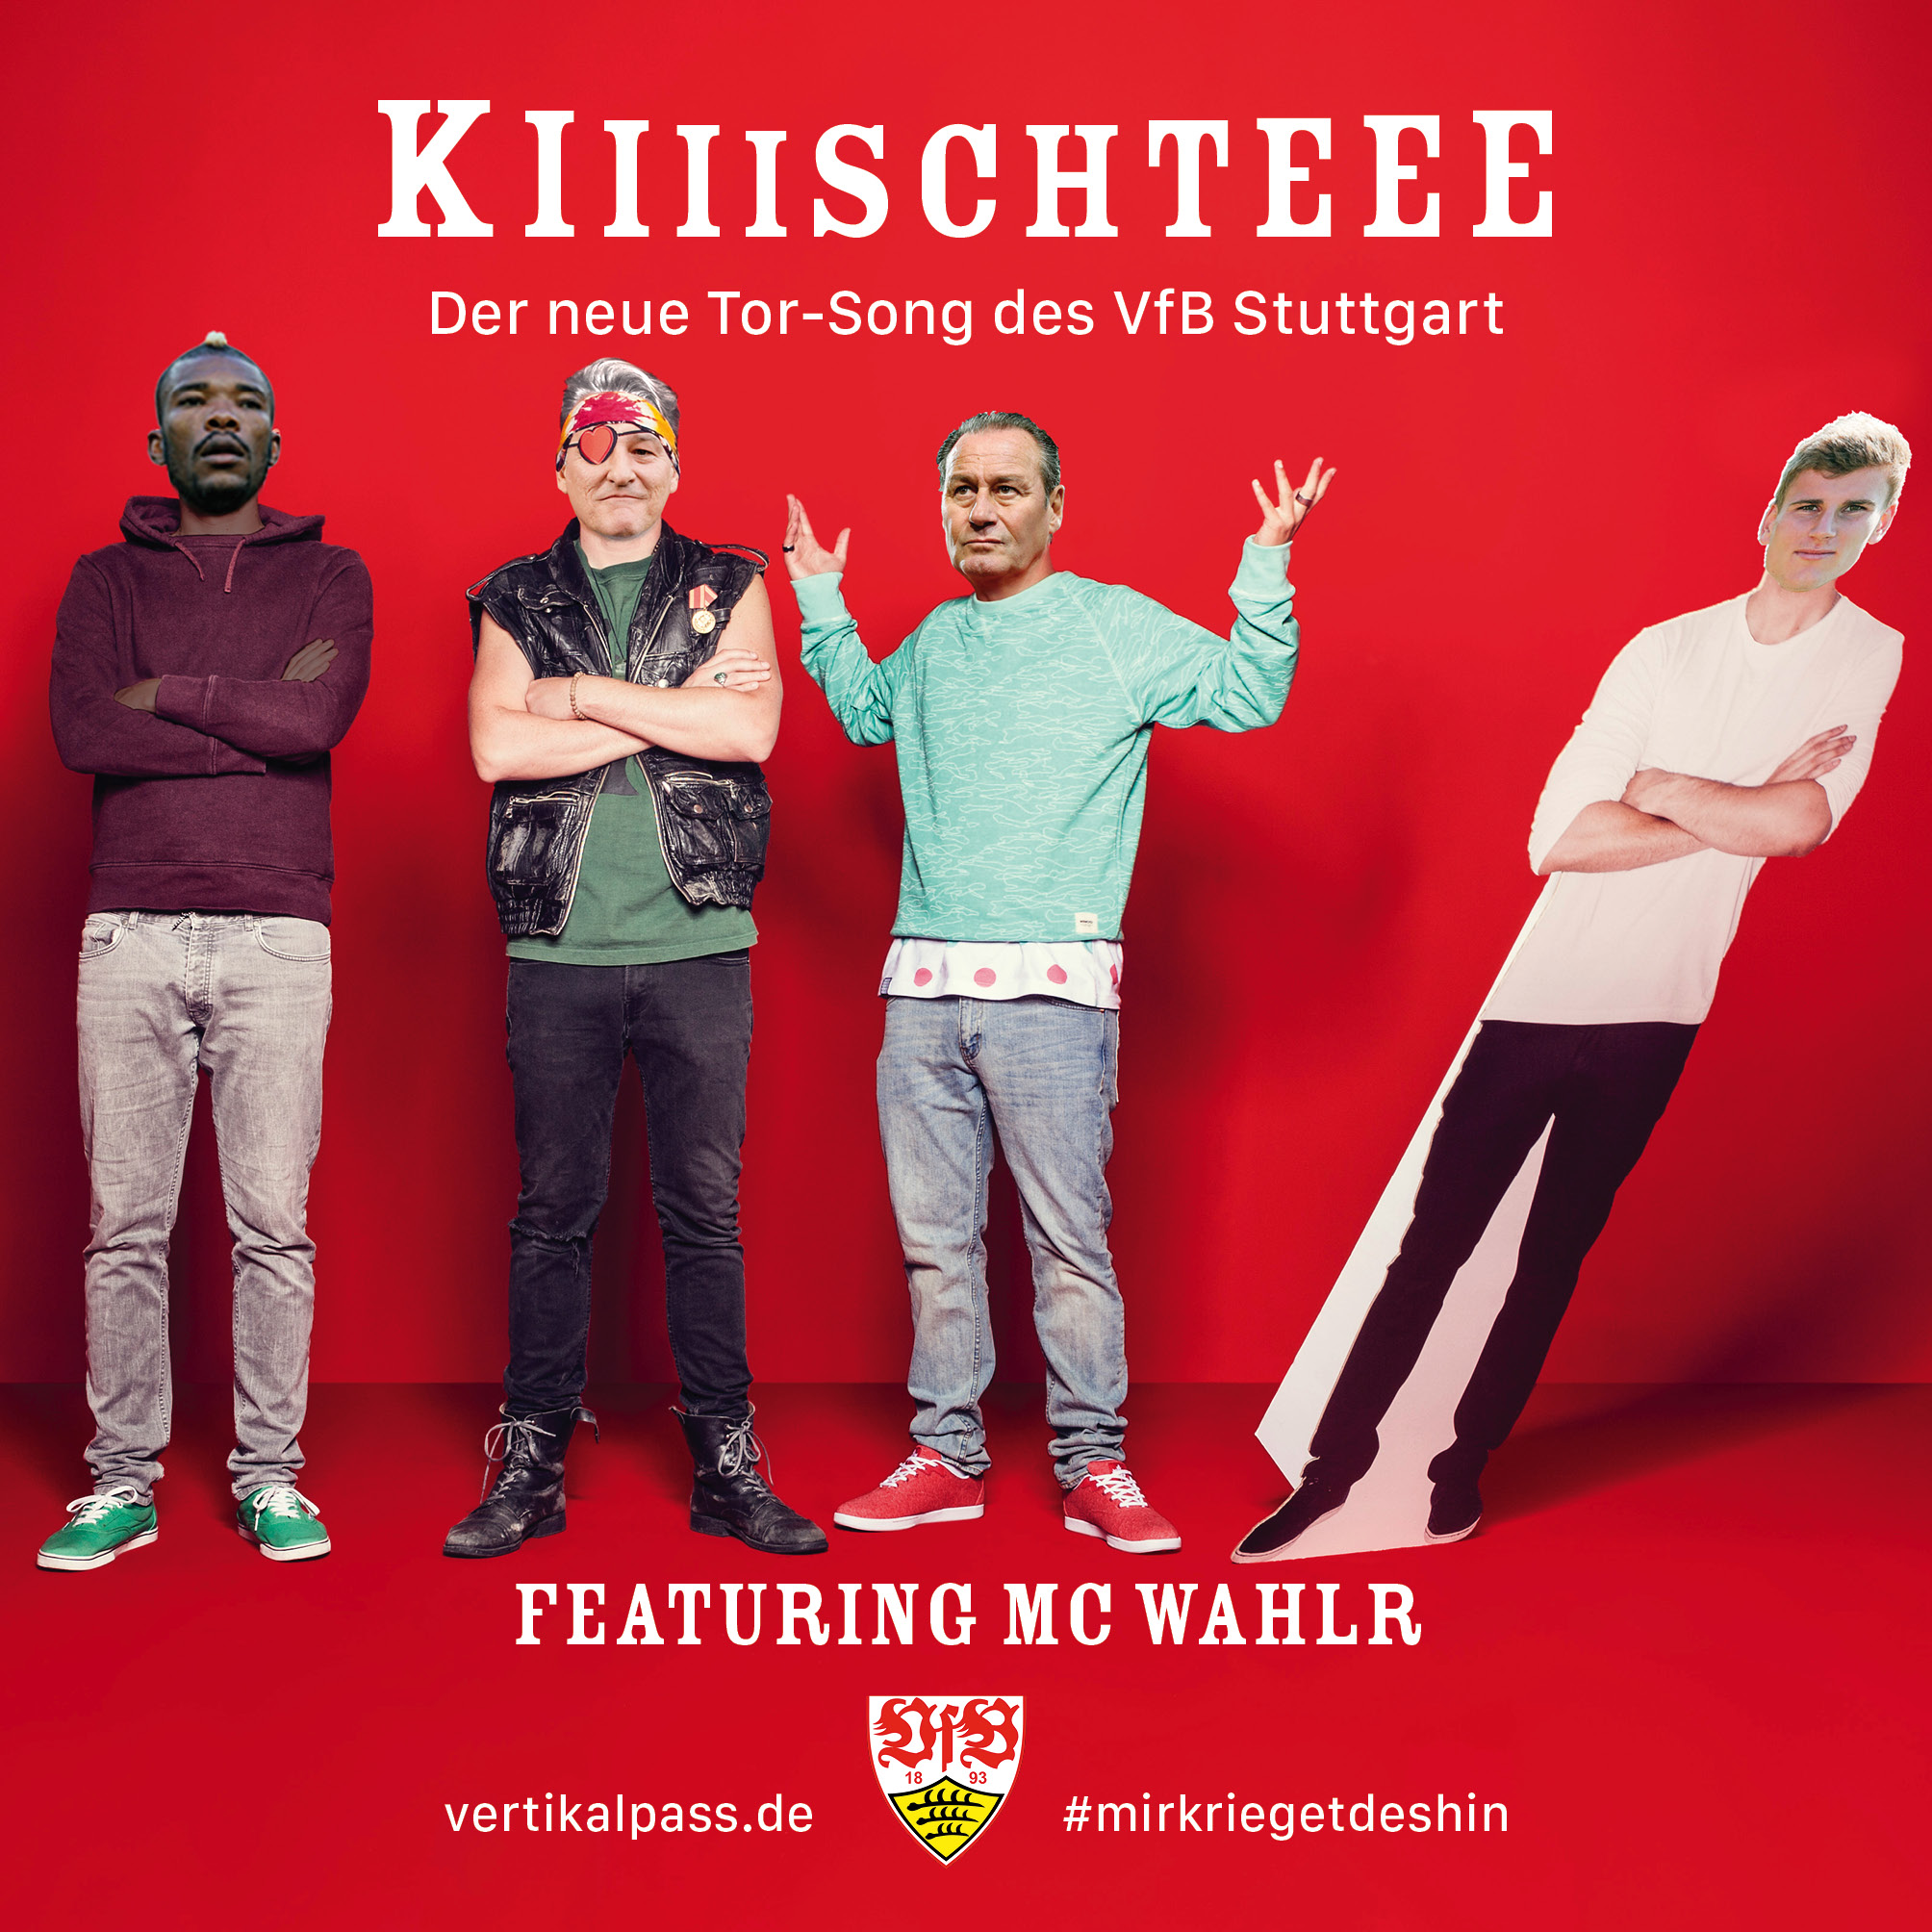 Das Cover von "Kiiiiiiiiischteee" featuring MC Wahlr, inspiriert von den Orsons (Chimperator), erhältlich nur als Vinyl.